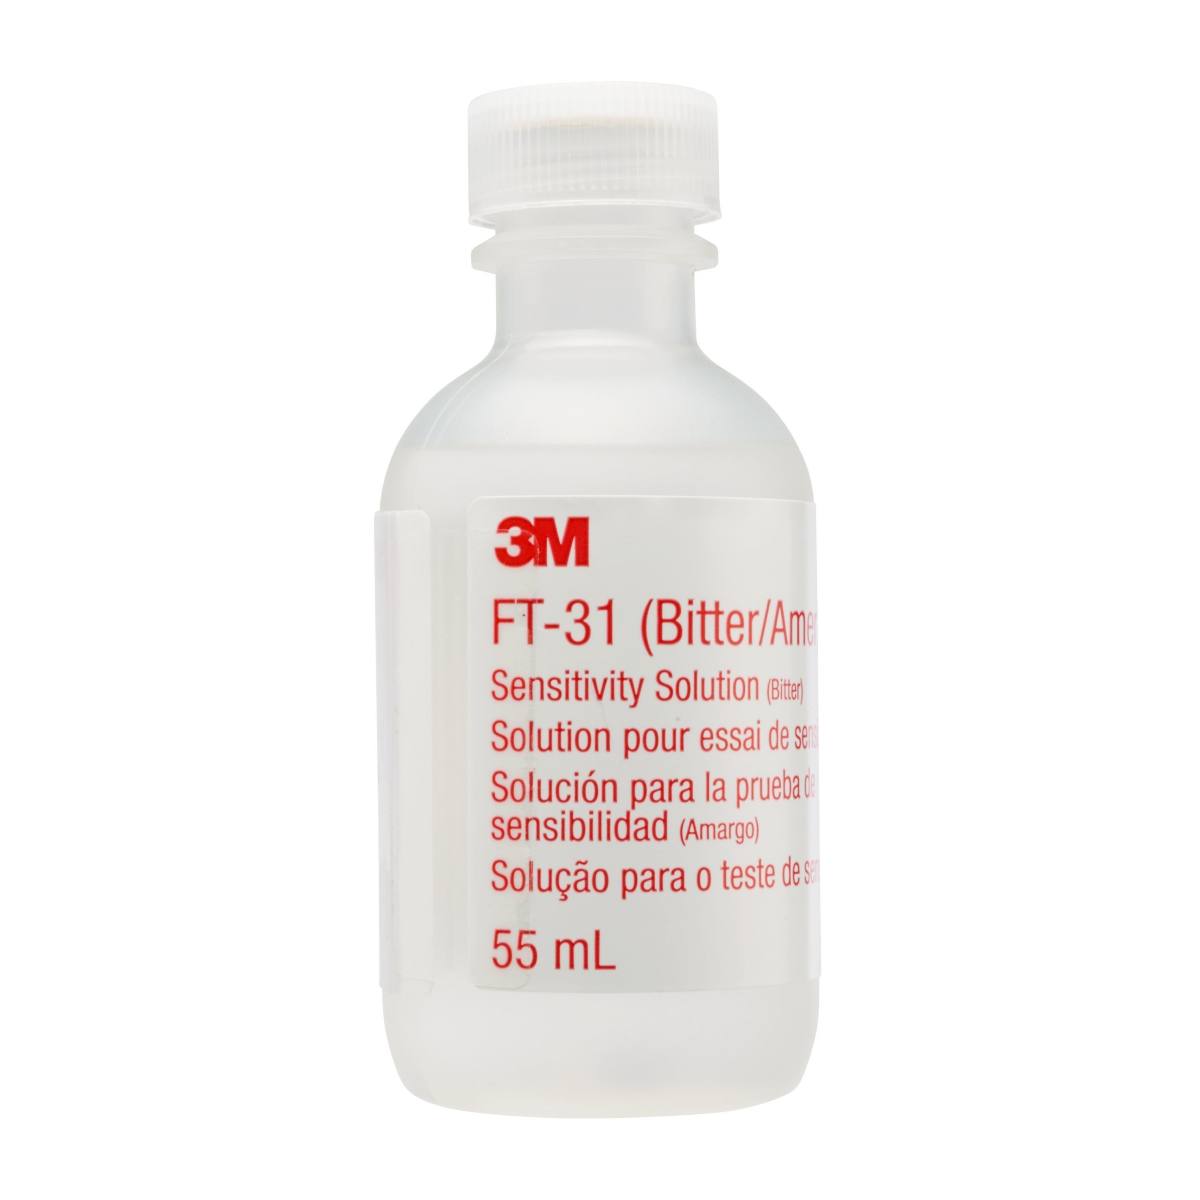 3M FT-31 Soluzione per test di sensibilitÃ , flaconi da 55 ml, amaro (confezione=6 pezzi)